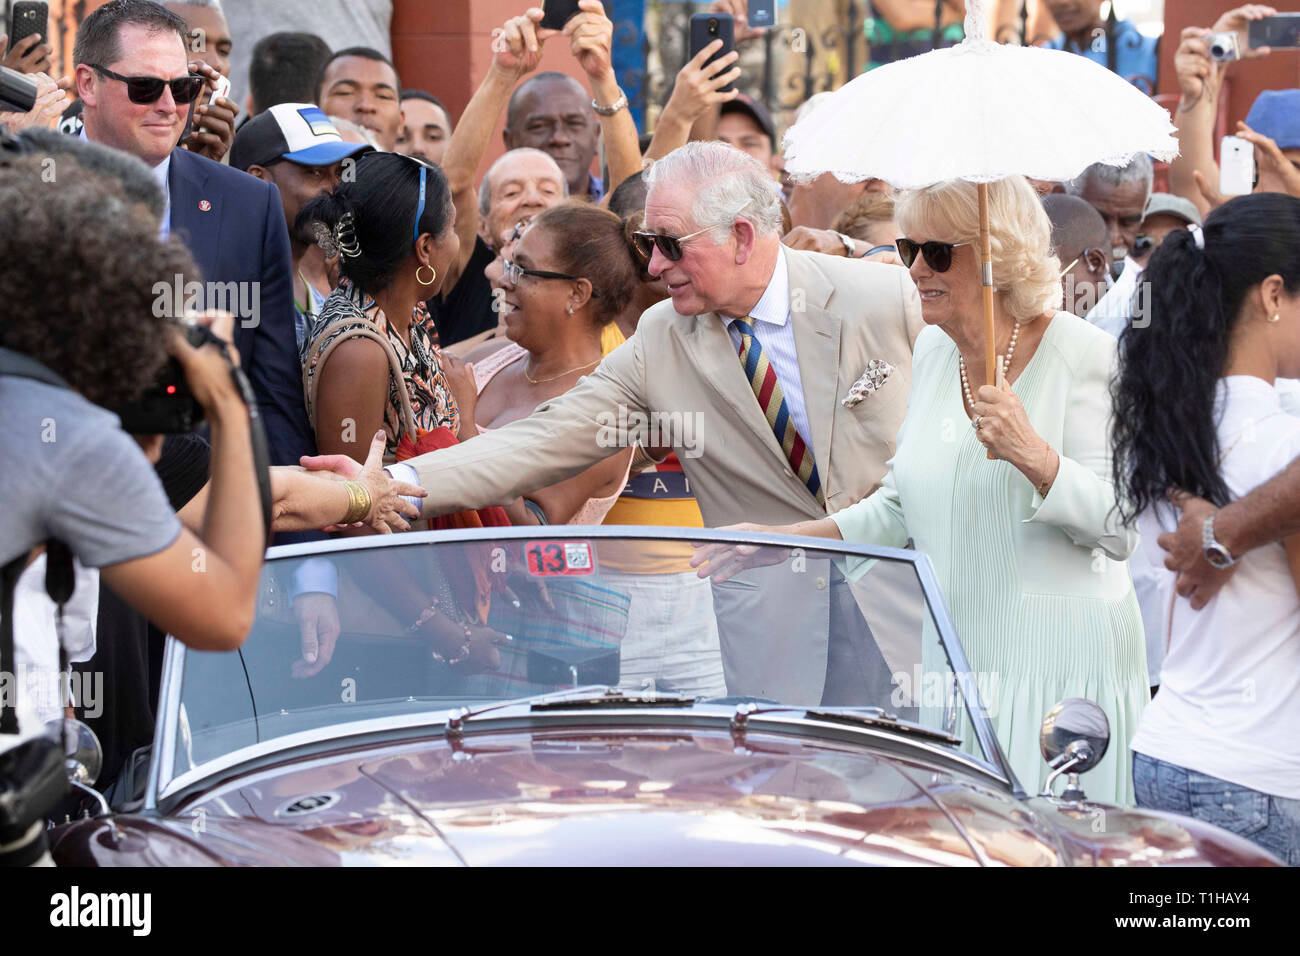 Il Principe di Galles e la duchessa di Cornovaglia frequentare un British Classic Car evento in John Lennon Square, Havana, Cuba, come parte di un viaggio storico che celebra i legami culturali tra il Regno Unito e la stato comunista. Foto Stock